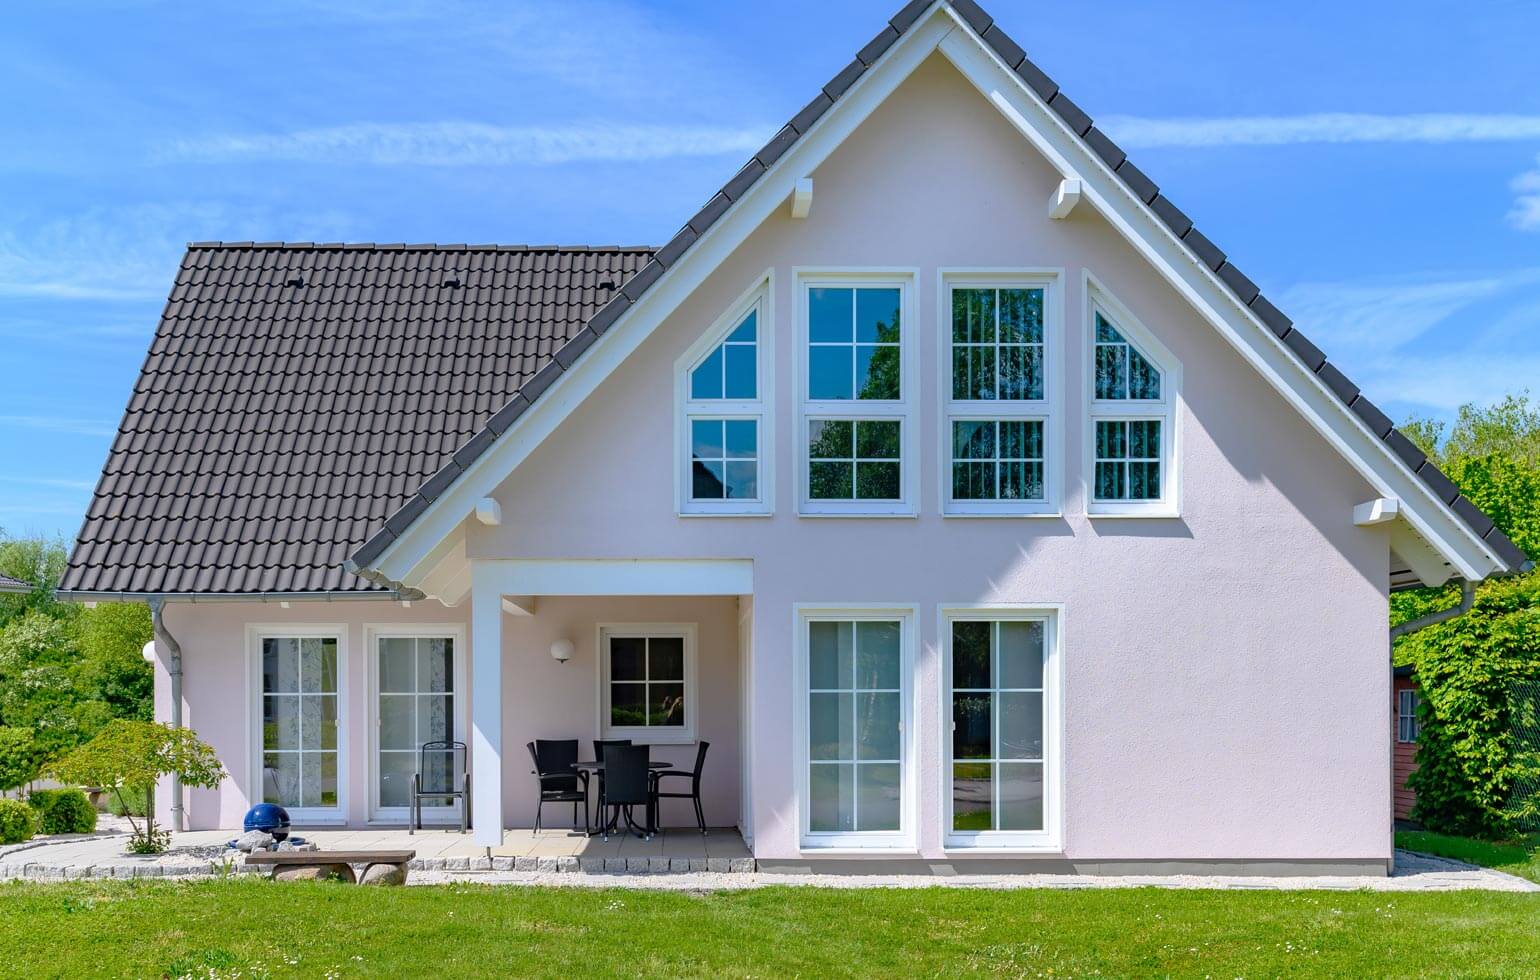 Einfamilienhaus - hochwertiger Fassadenanstrich